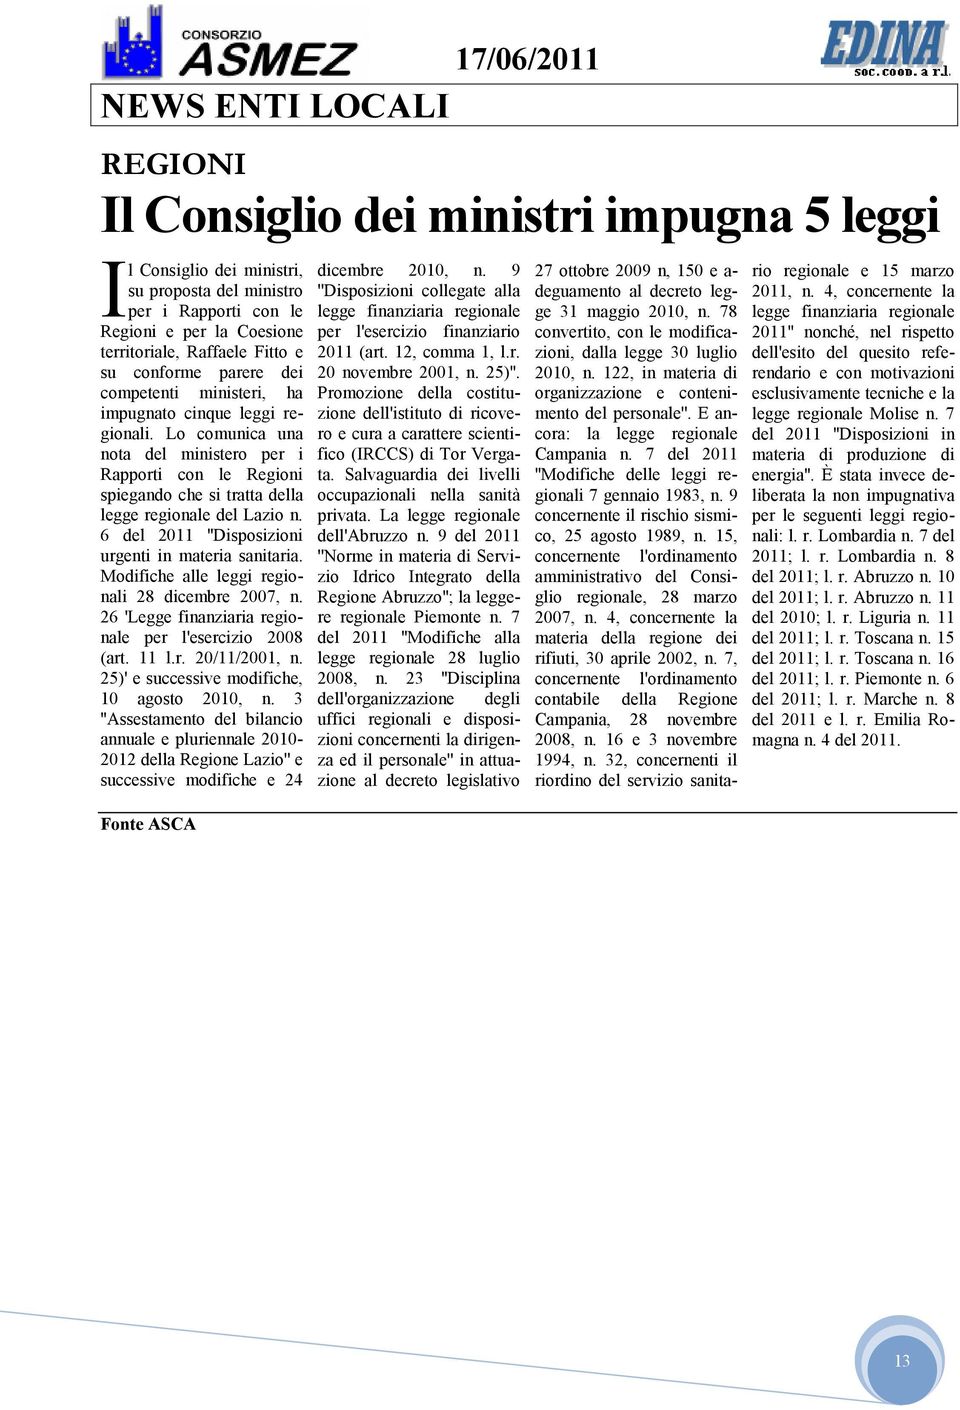 Lo comunica una nota del ministero per i Rapporti con le Regioni spiegando che si tratta della legge regionale del Lazio n. 6 del 2011 ''Disposizioni urgenti in materia sanitaria.